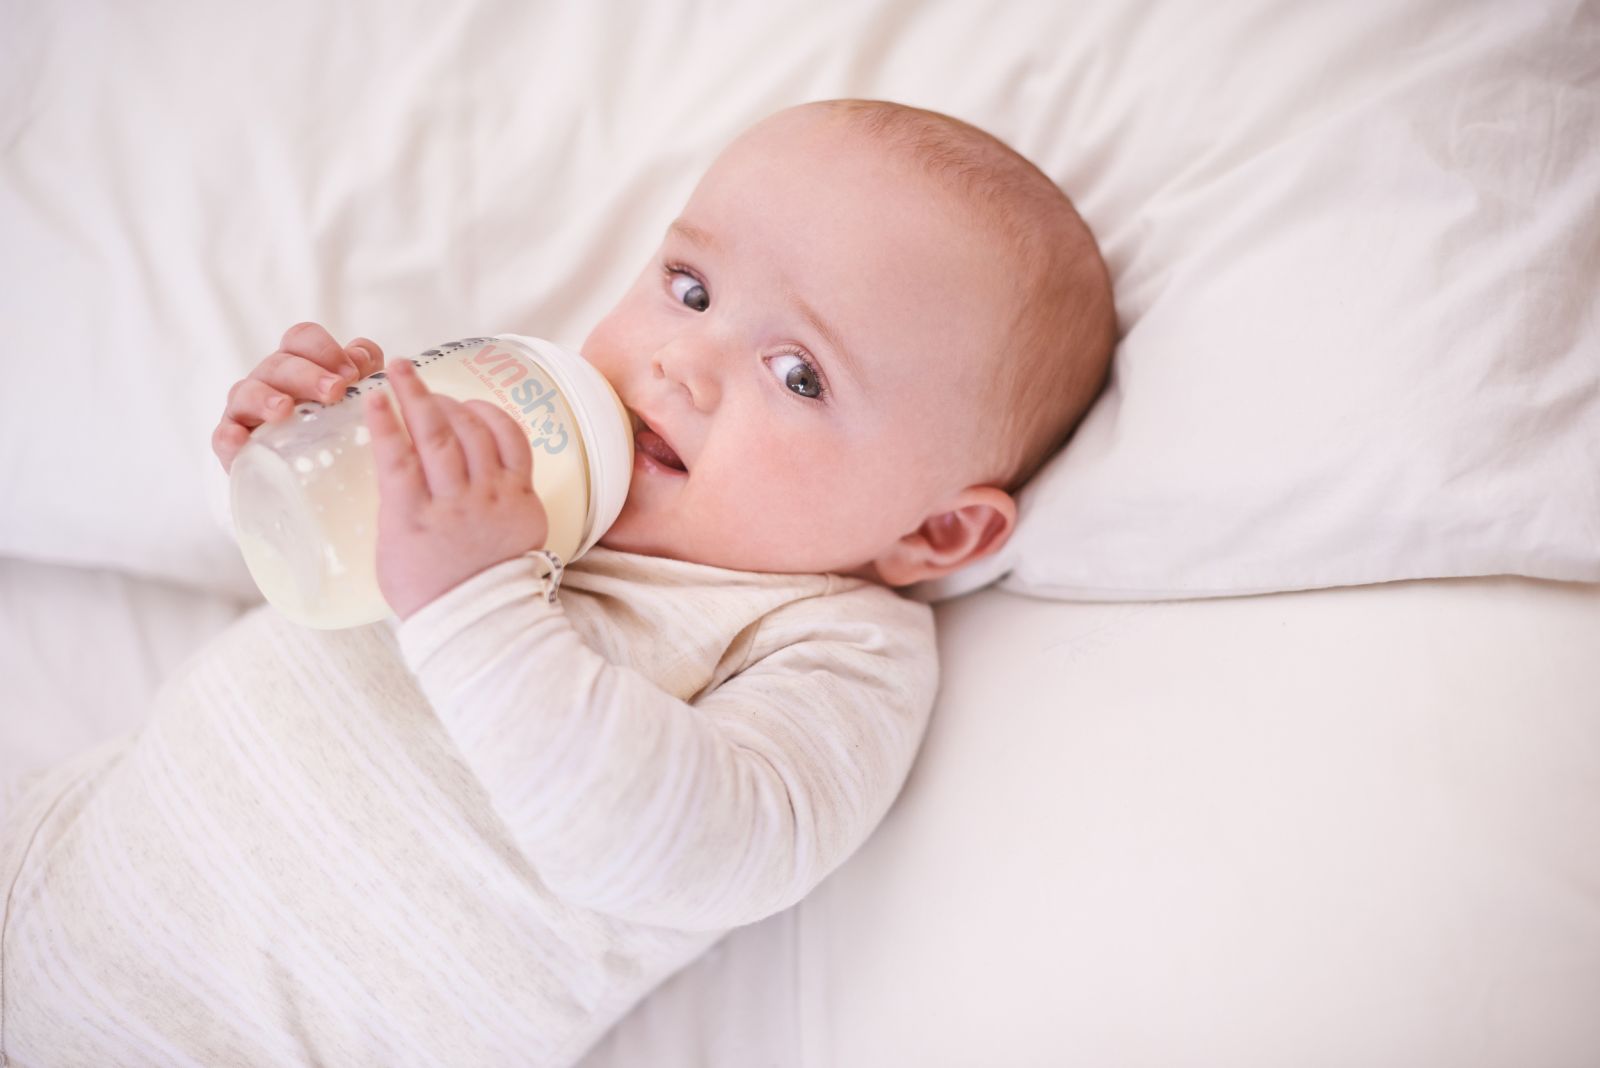 Giàu dưỡng chất, dễ hấp thu là những lý do sữa mát được các mẹ bỉm ưu tiên lựa chọn 